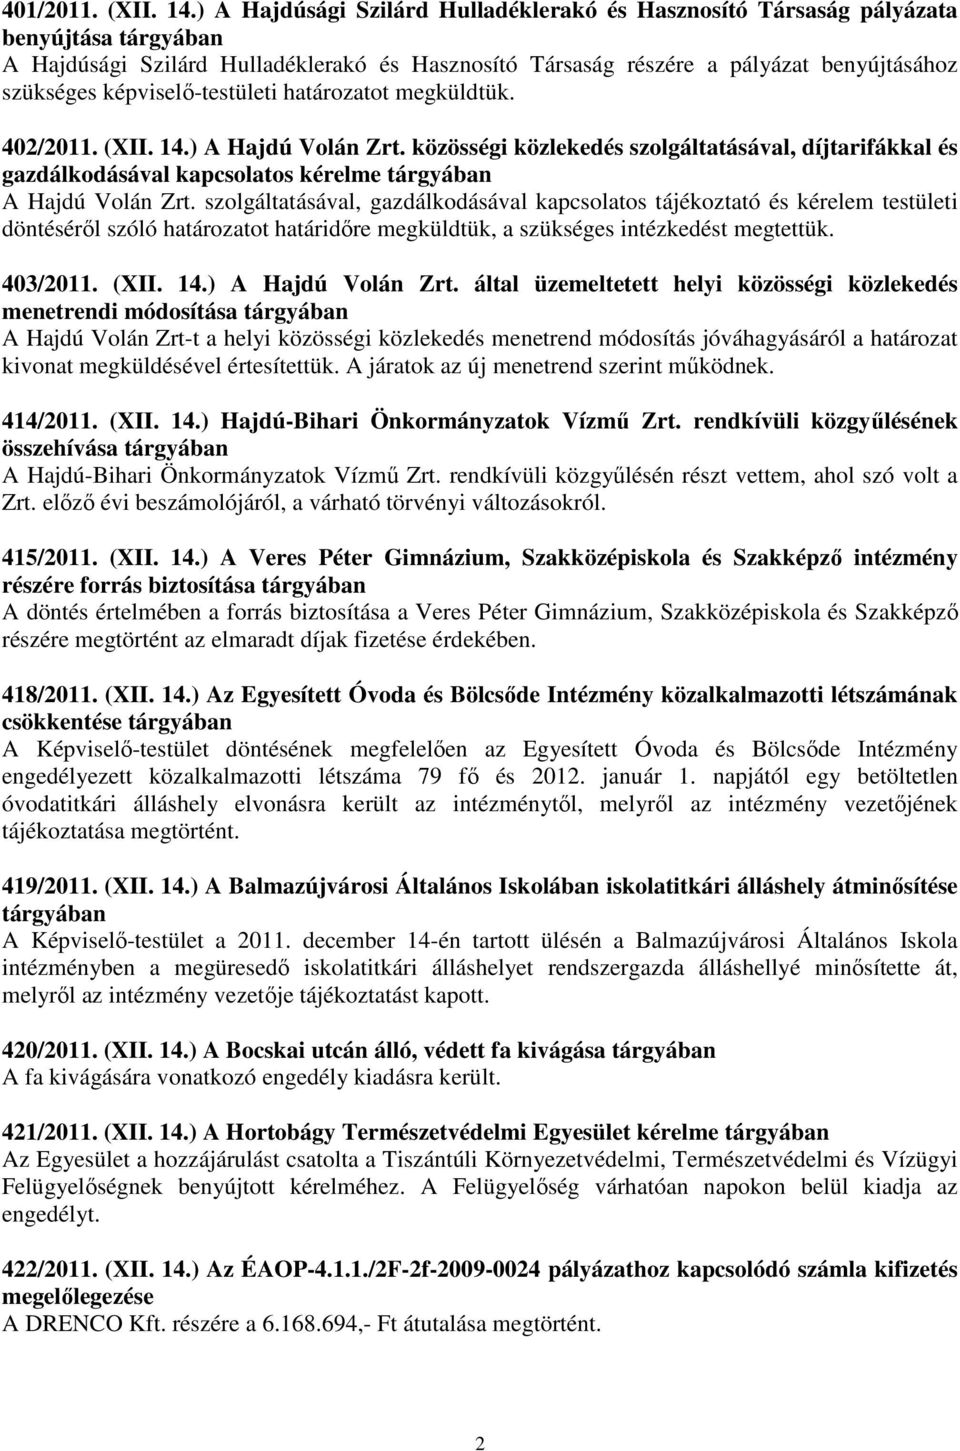 képviselı-testületi határozatot megküldtük. 402/2011. (XII. 14.) A Hajdú Volán Zrt.